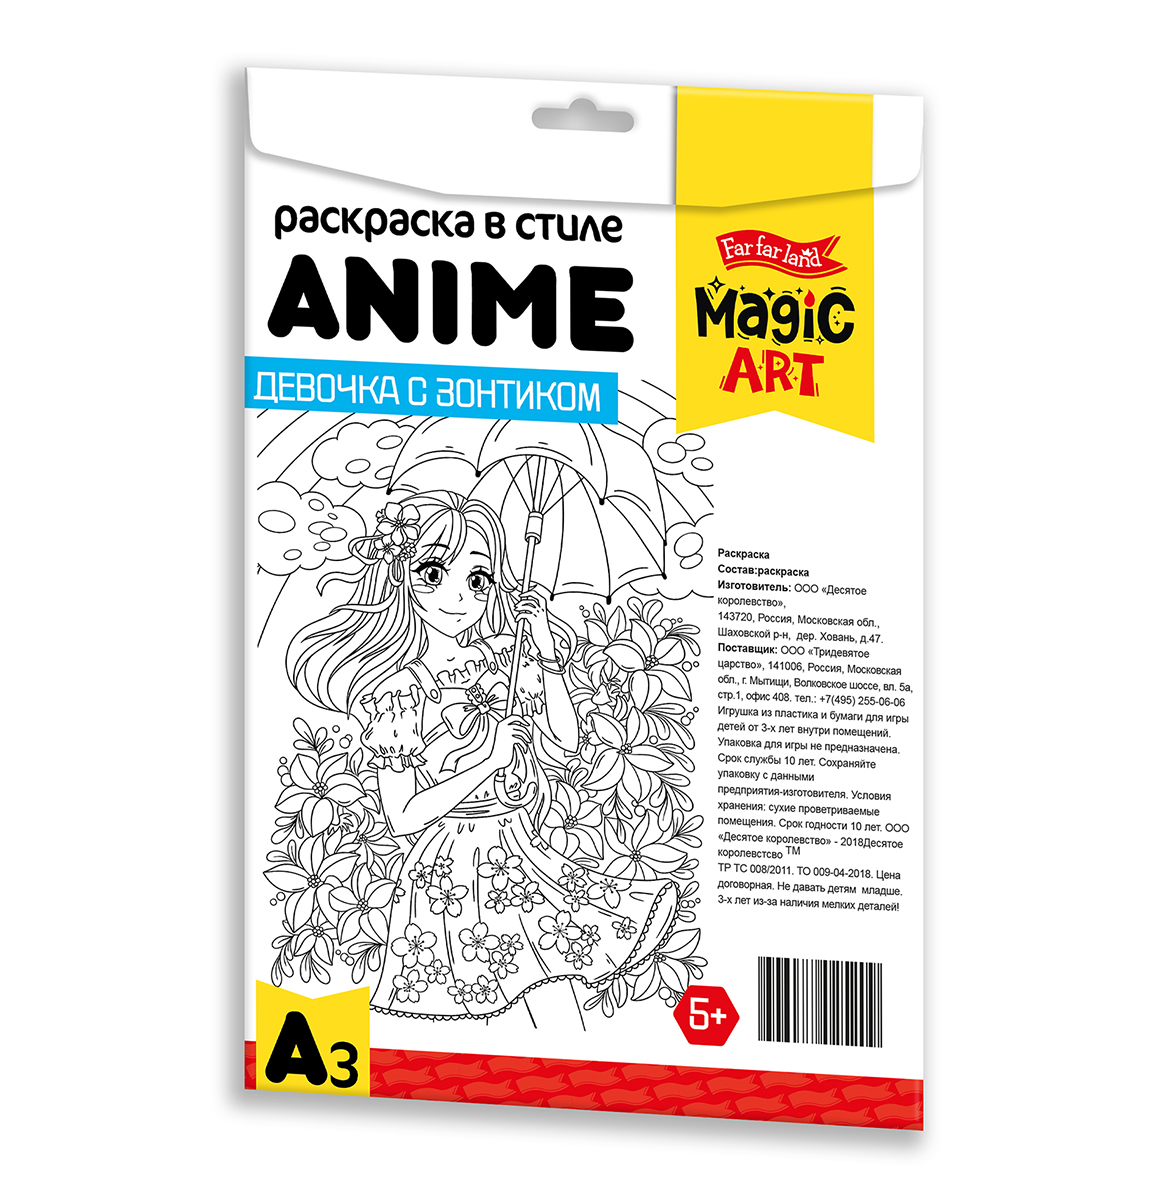 Раскраска в стиле ANIME Девочка с зонтиком (формат А3) (Вид 2)